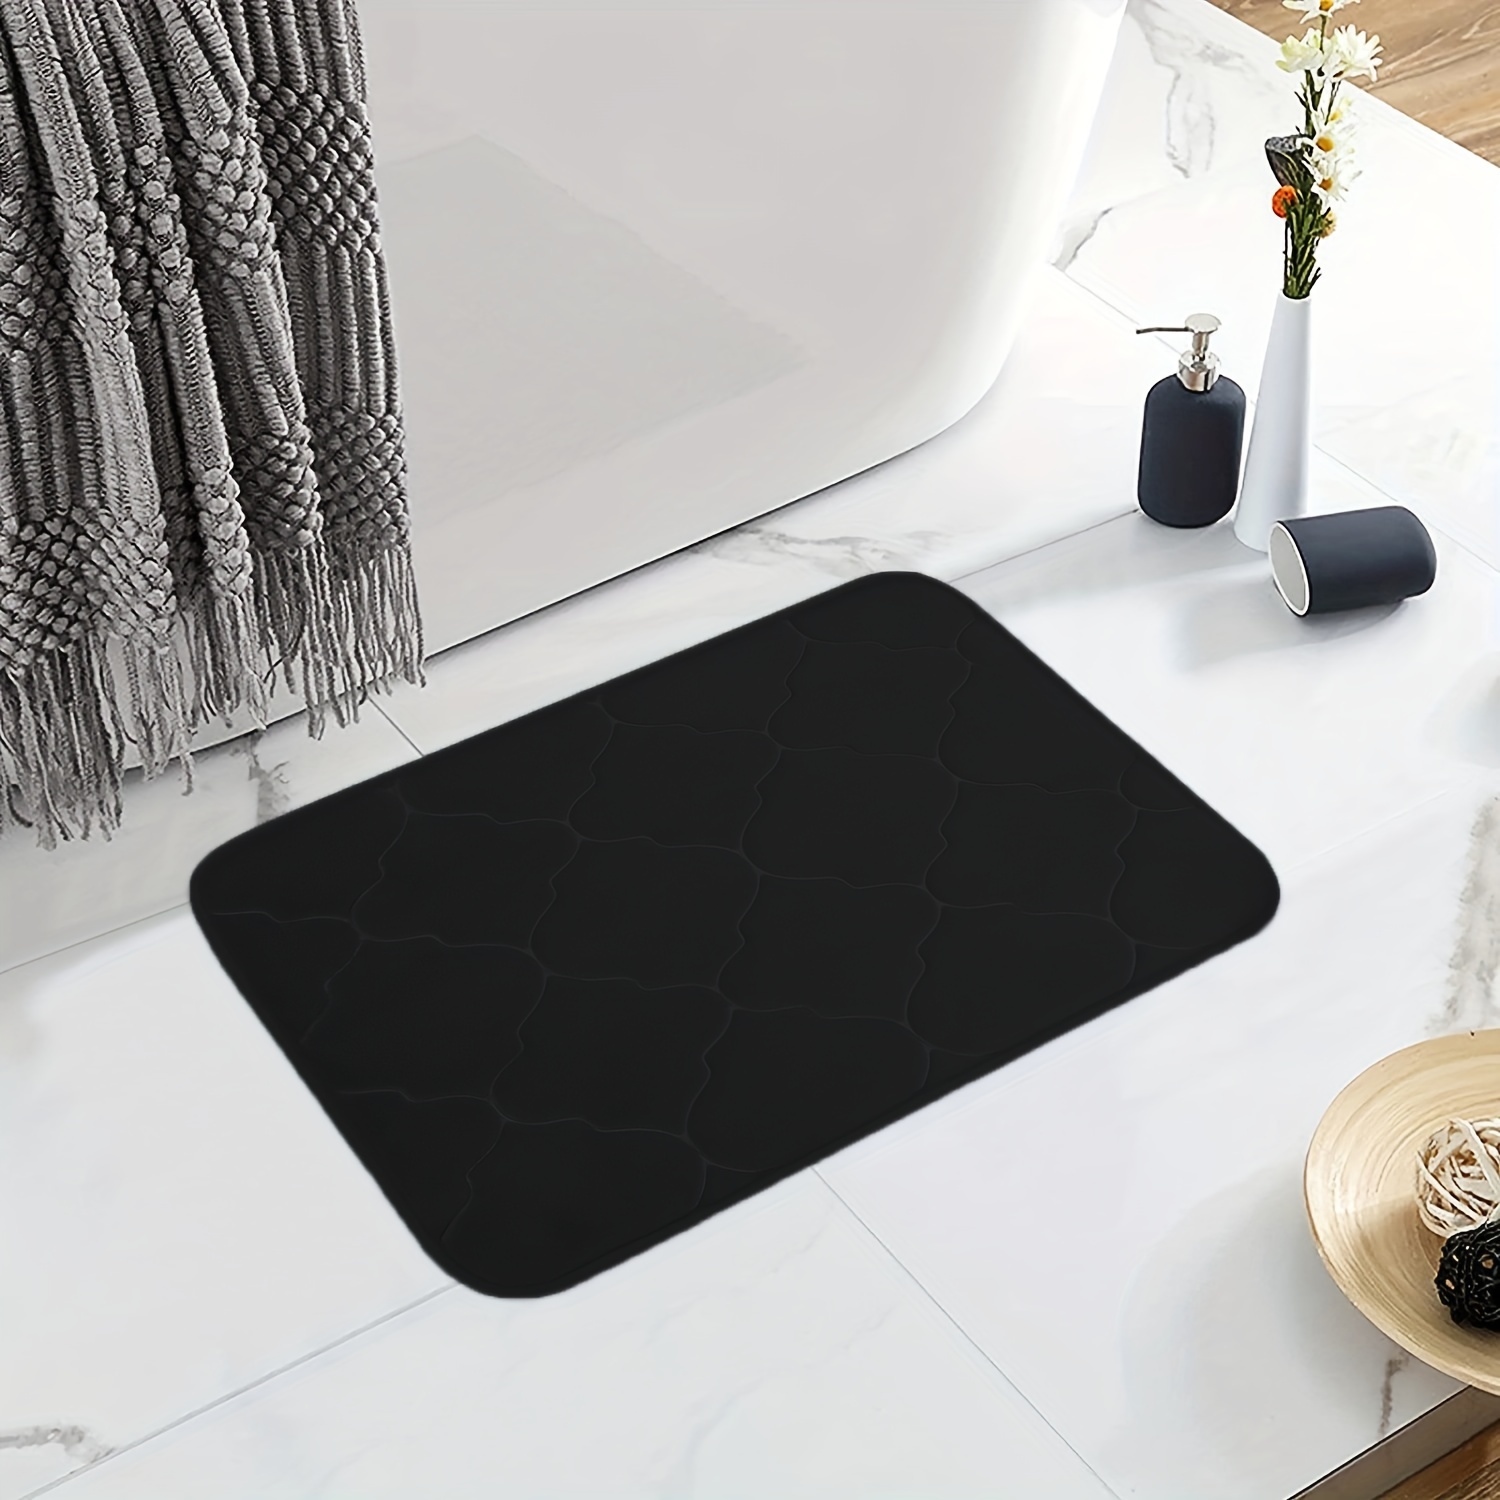 WIRIST Bath Mat/Shower Mat, Non-Slip, Super Absorbent Black, (23.6 x 15.7)